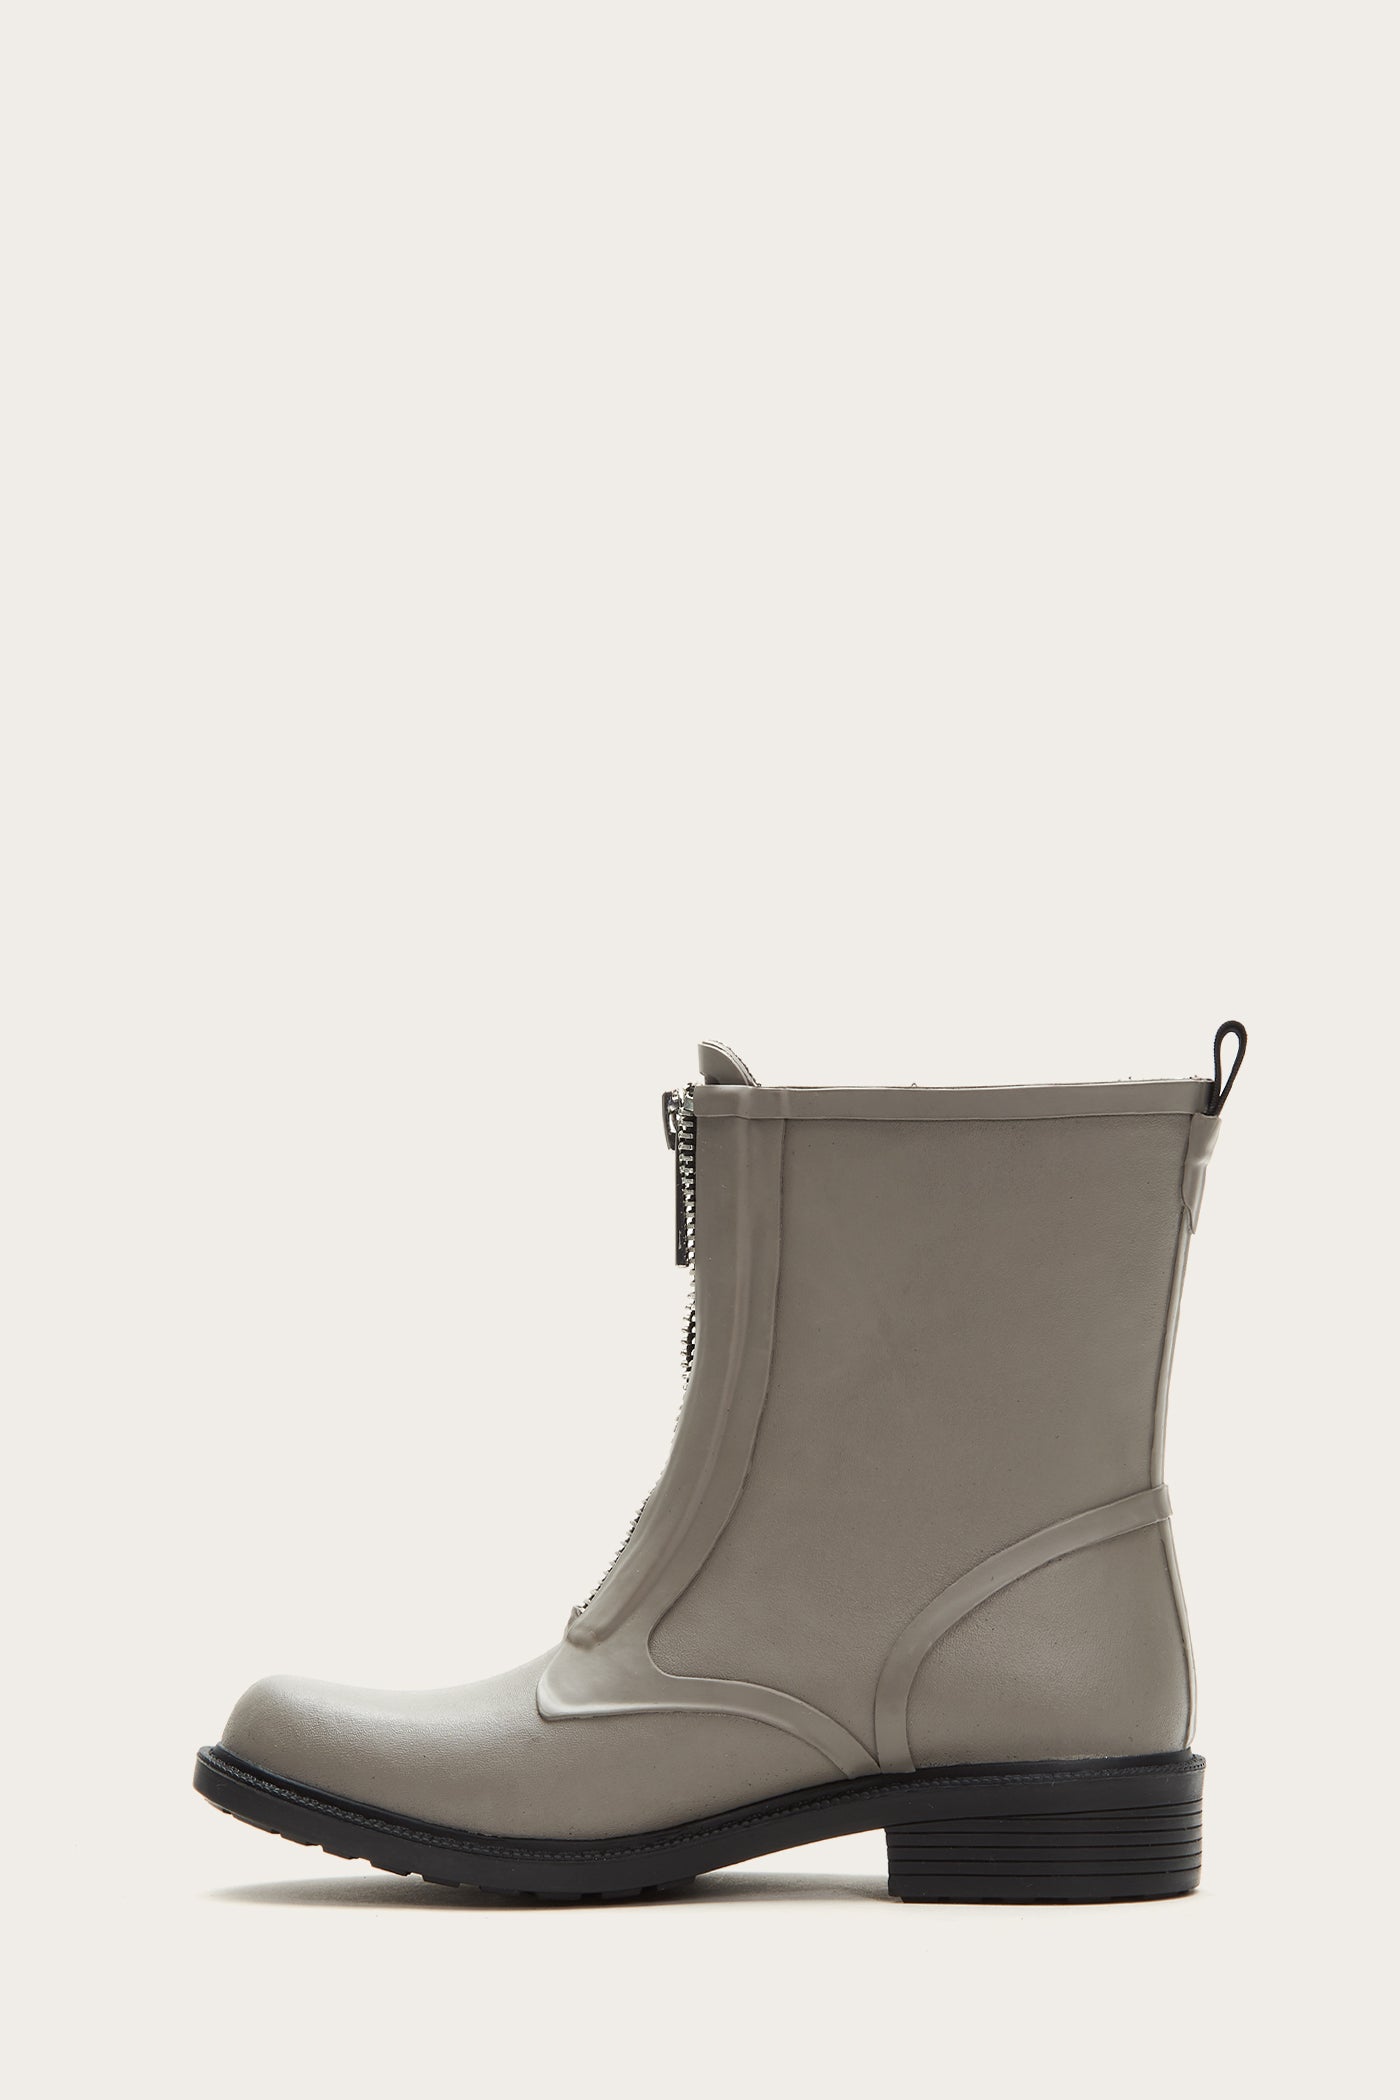 frye boots rain